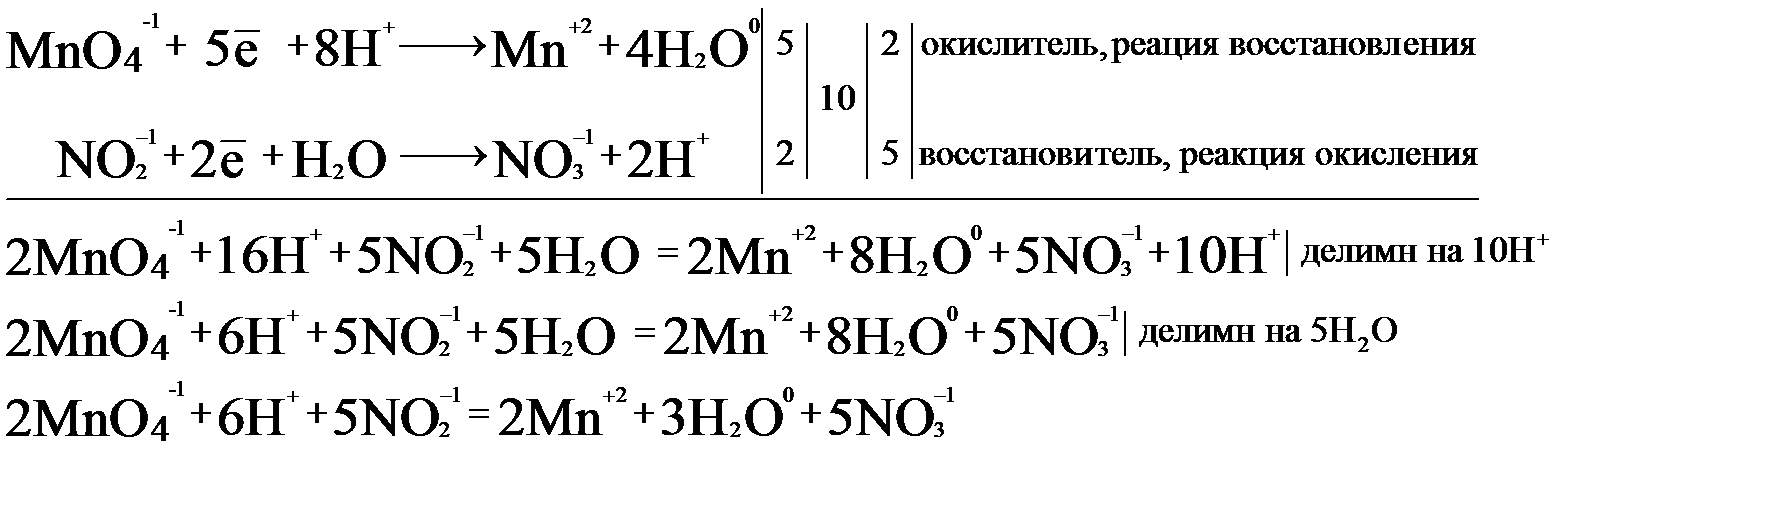 Окислительно восстановительные реакции znso4. Nano2 ОВР. Электронно ионный метод ОВР. ОВР ZN+h2so4 znso4+h2s+h2o. ZN+h2so4 ОВР.